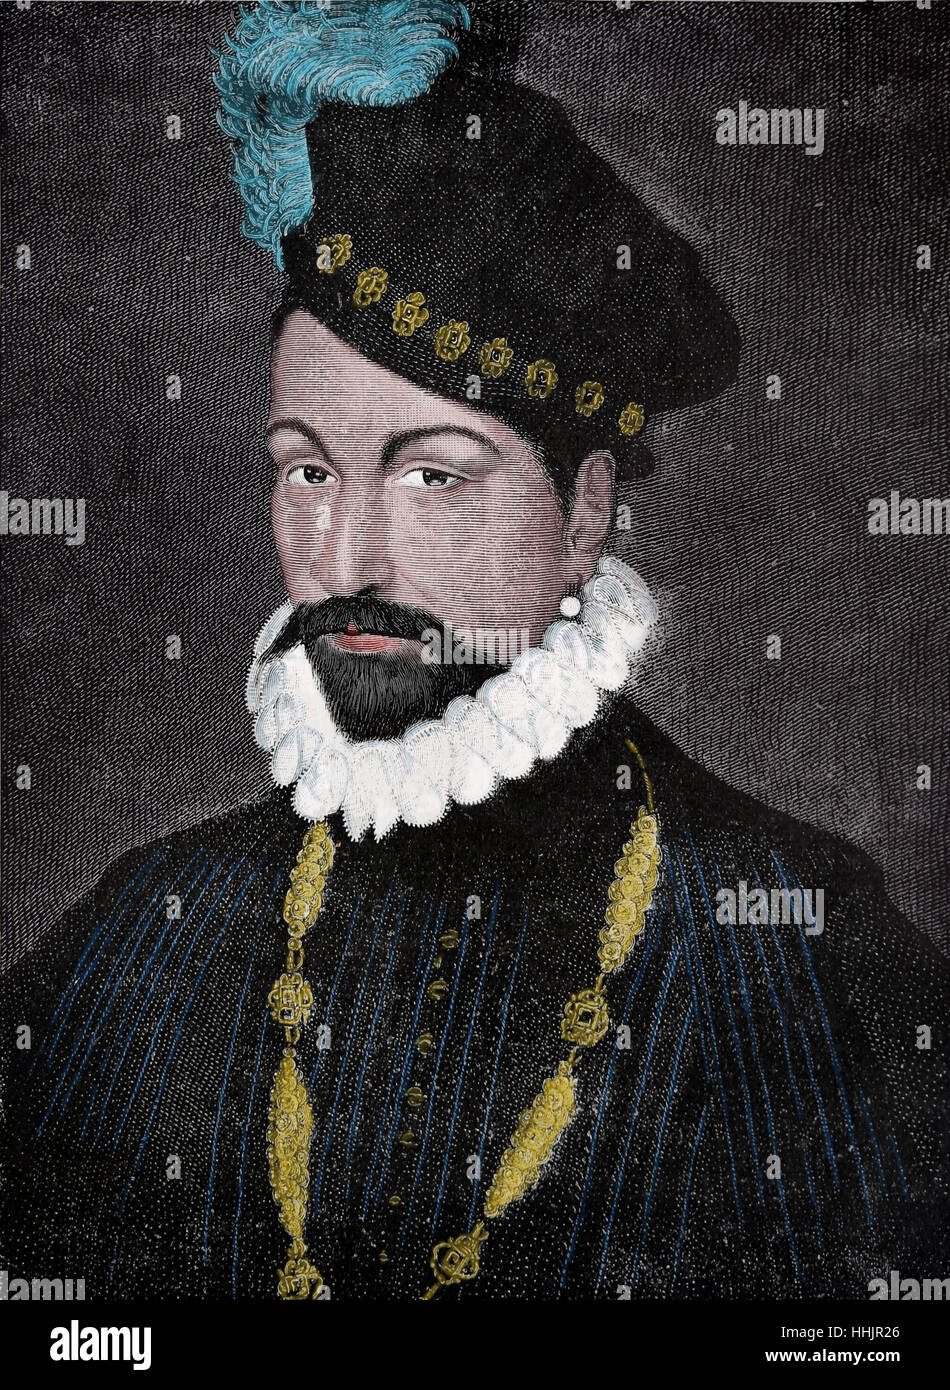 Carlo IX di Francia (1550-1574). Il monarca della Casa di Valois. Incisione, 1884. Ritratto. Foto Stock